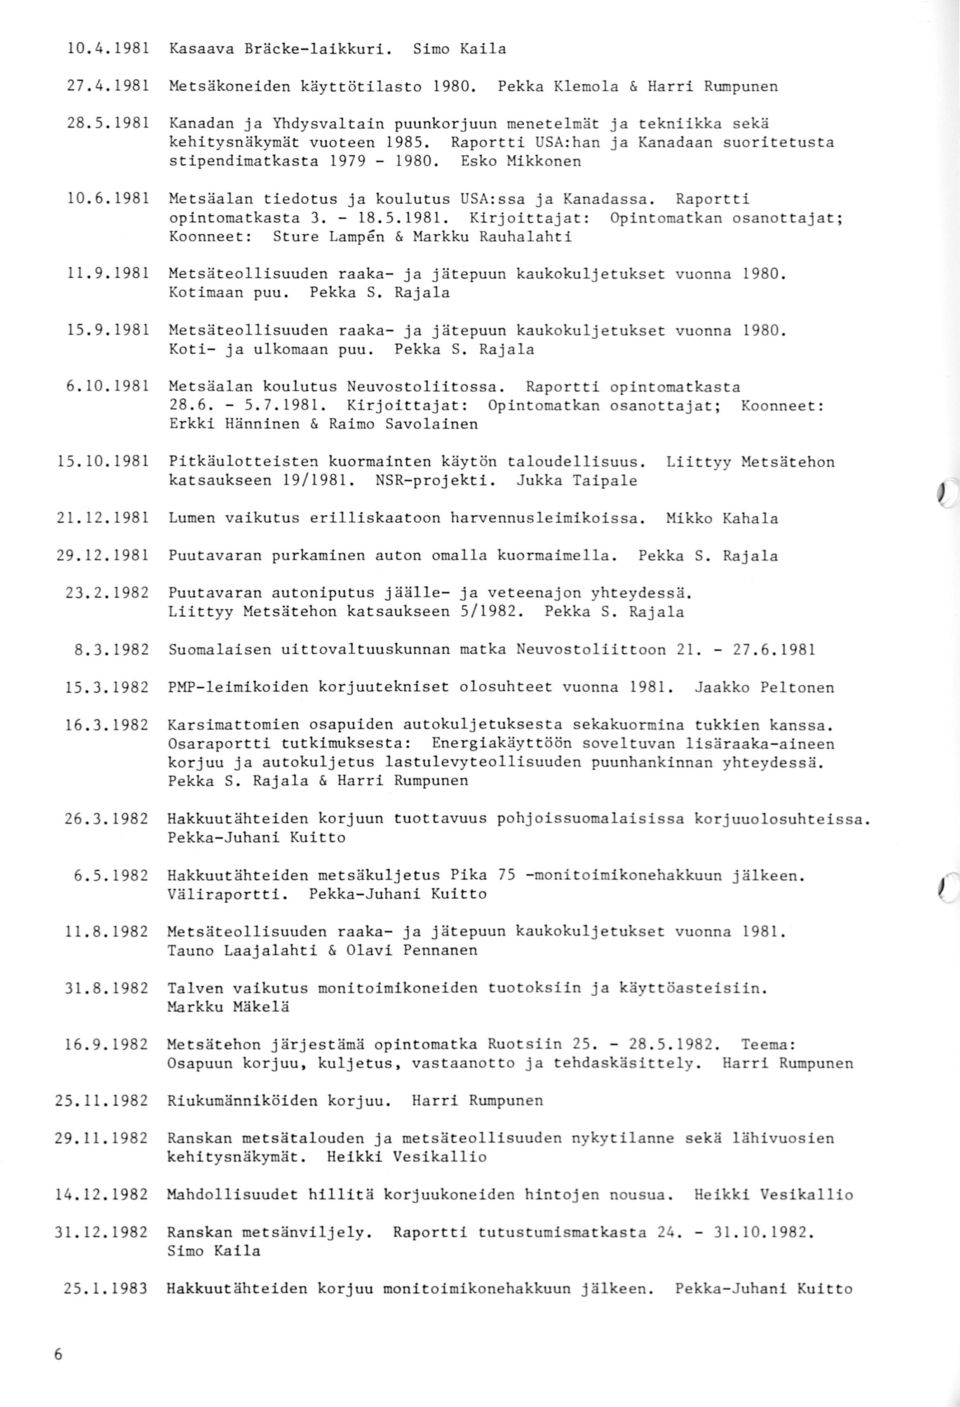 9.1981 Metsäteollisuuden raaka- ja jätepuun kaukokuljetukset vuonna 1980. Kotimaan puu. Pekka S. Rajala 15. 9. 1981 Metsäteollisuuden raaka- ja jätepuun kaukokuljetukset vuonna 1980.